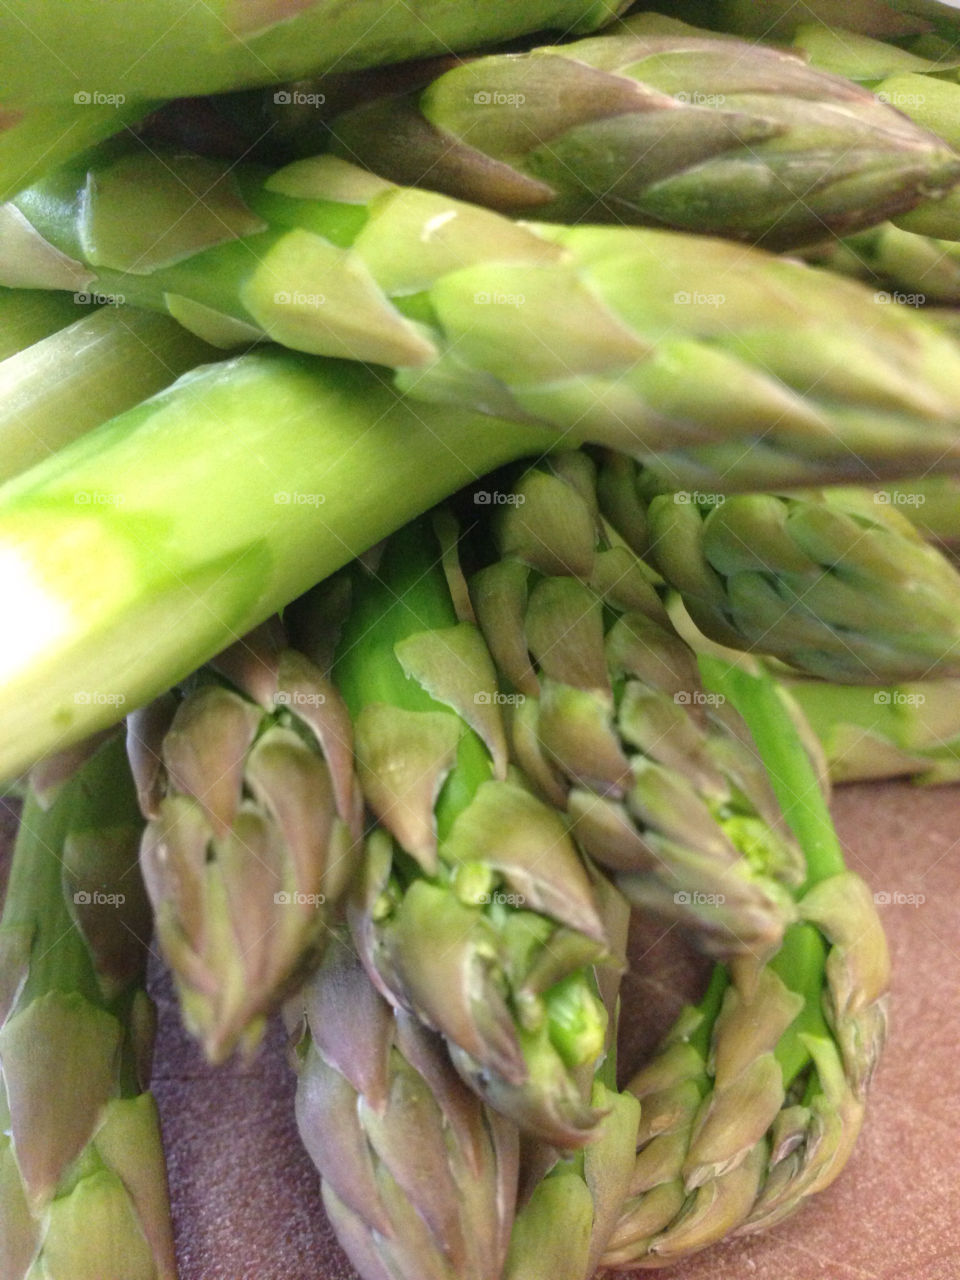 colour asparagus greens veg by stuart.best.904